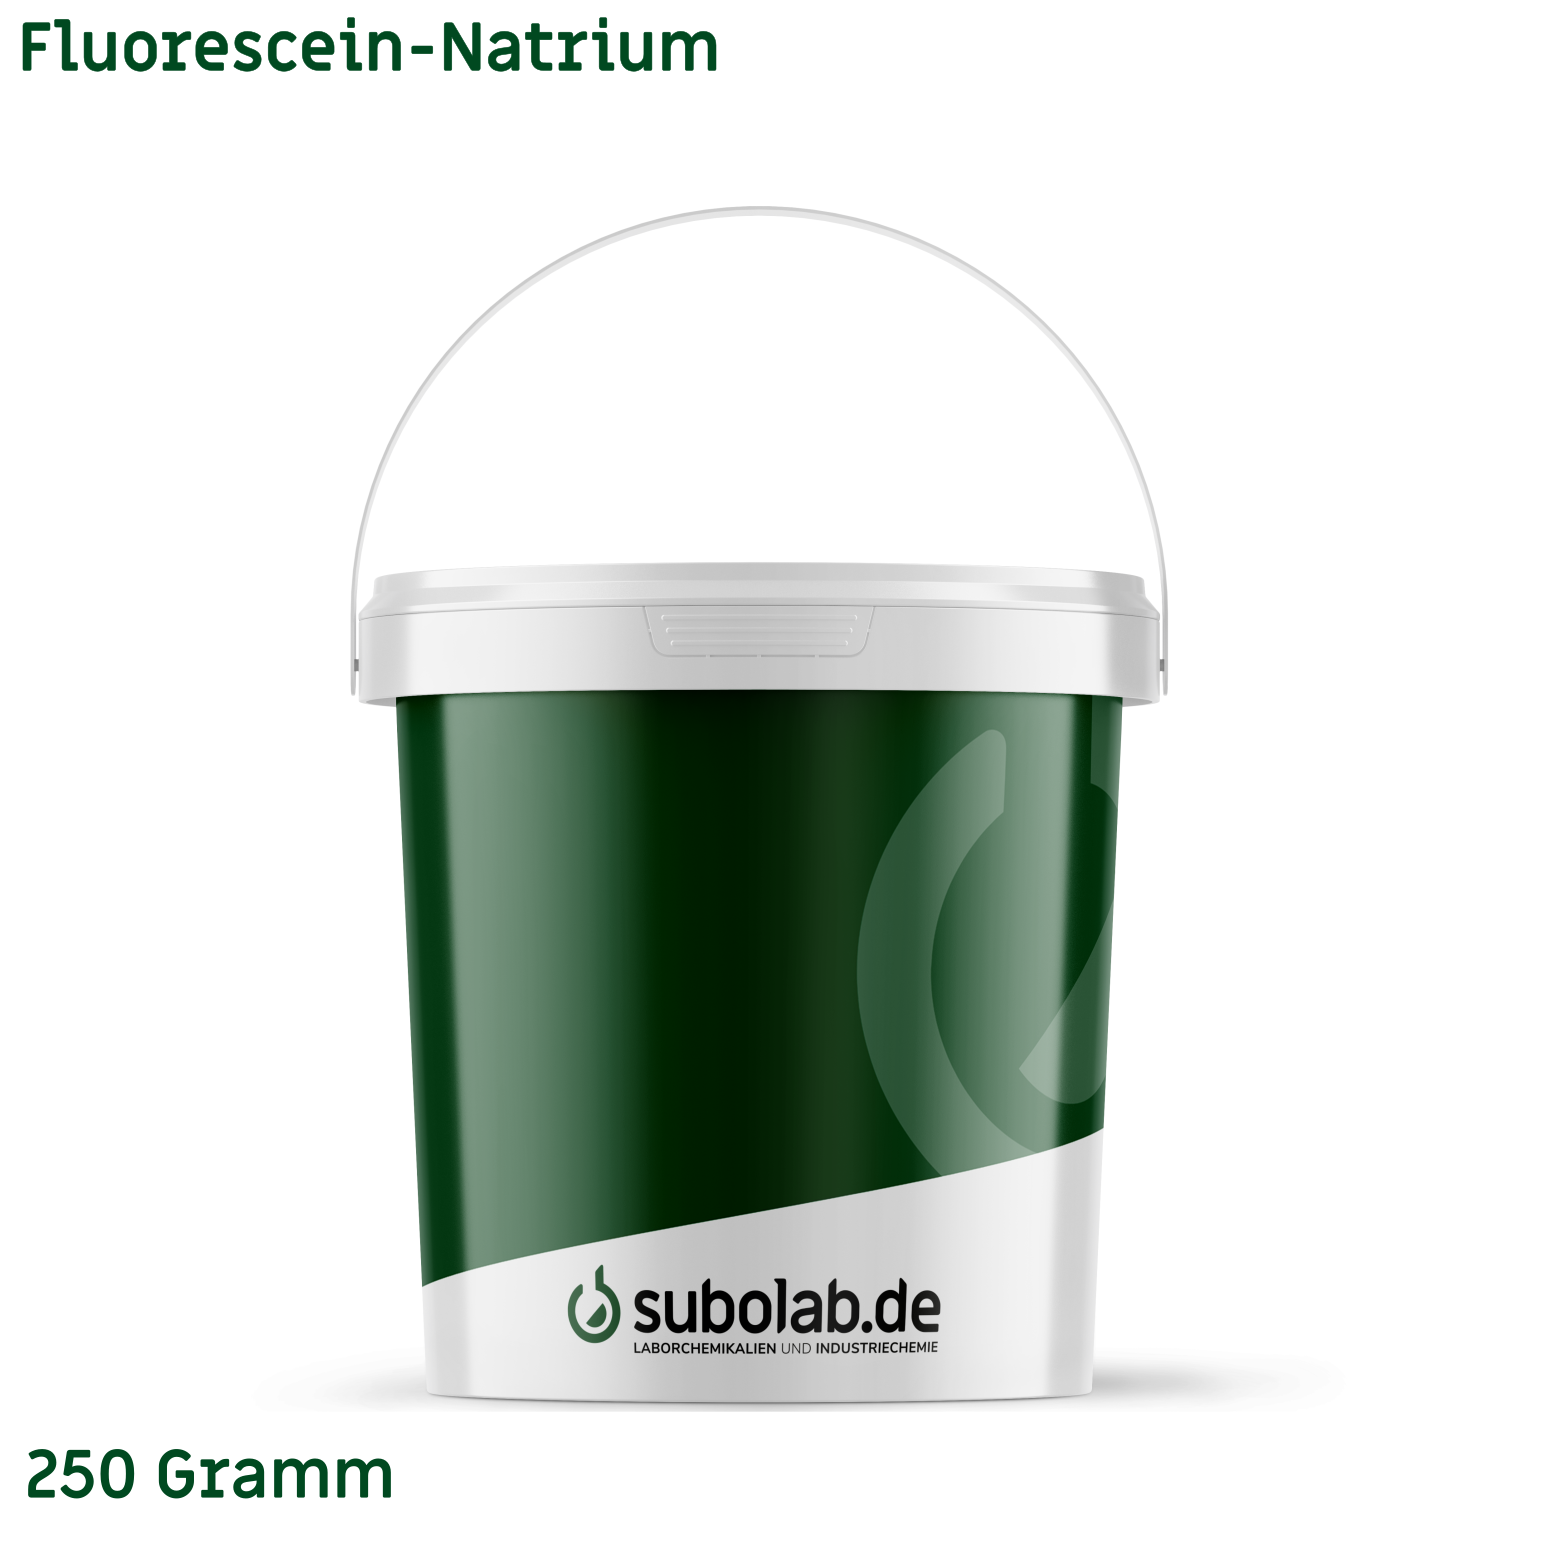 Bild von Fluorescein-Natrium (250 Gramm)